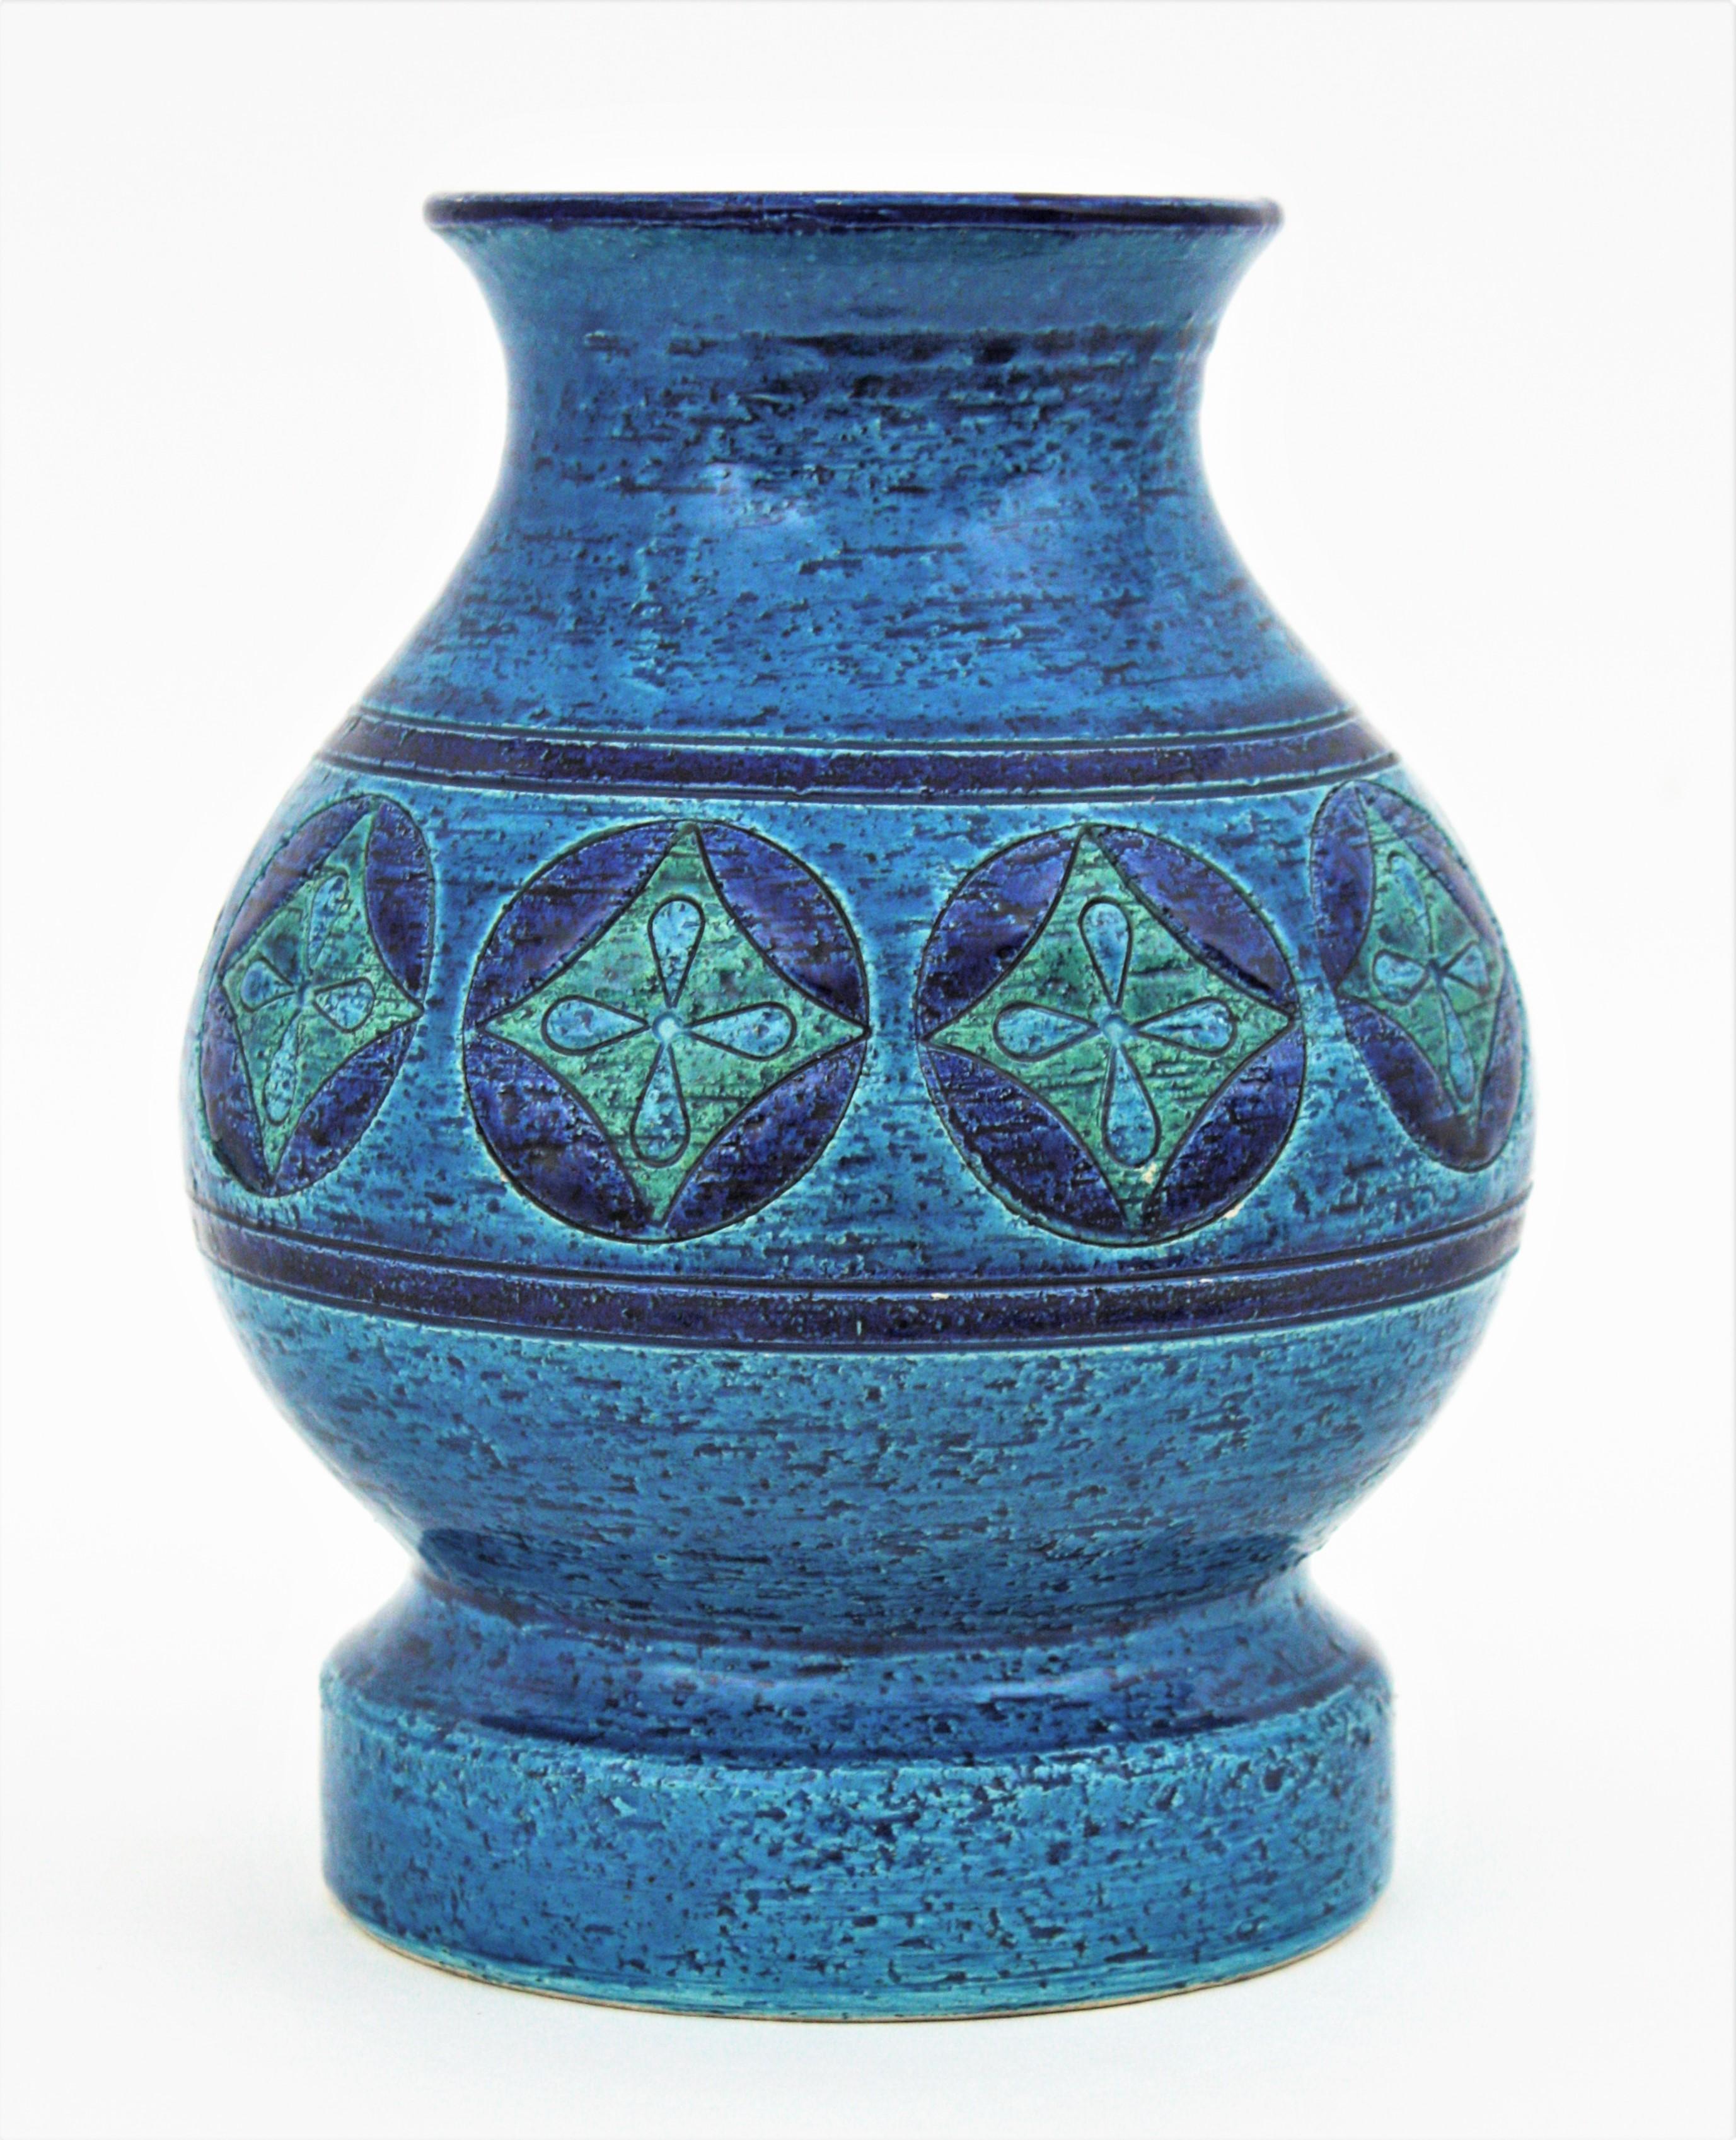 Rare dessin d'Aldo Londi pour Bitossi. Vase à pied en céramique Rimini Blue avec motifs géométriques, Italie, années 1960
Ce superbe vase en céramique émaillée présente un motif de cercles en bleu foncé avec des losanges à l'intérieur dans des tons